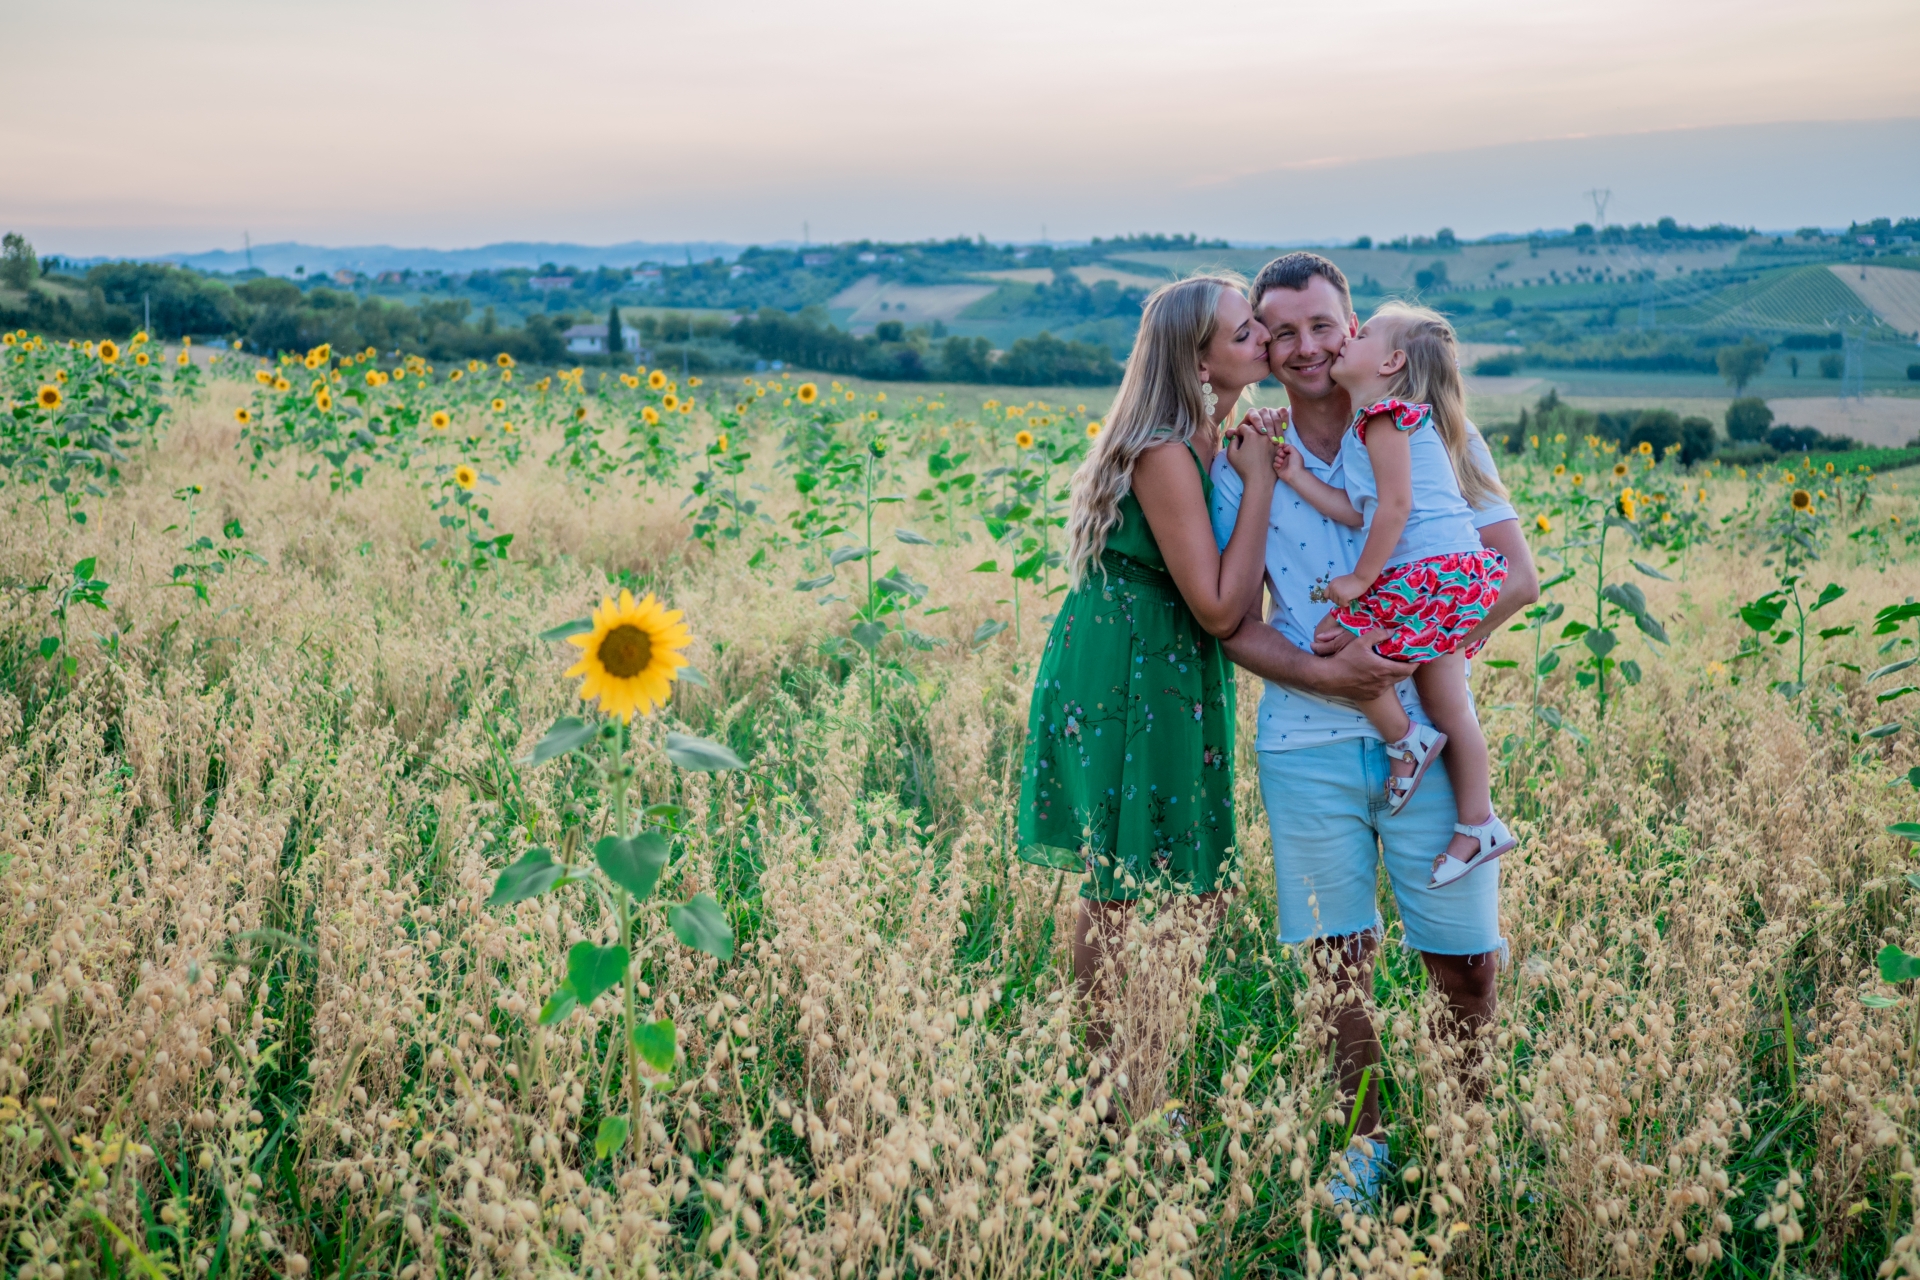 Family photo-shoot in Italian countryside near Rimini